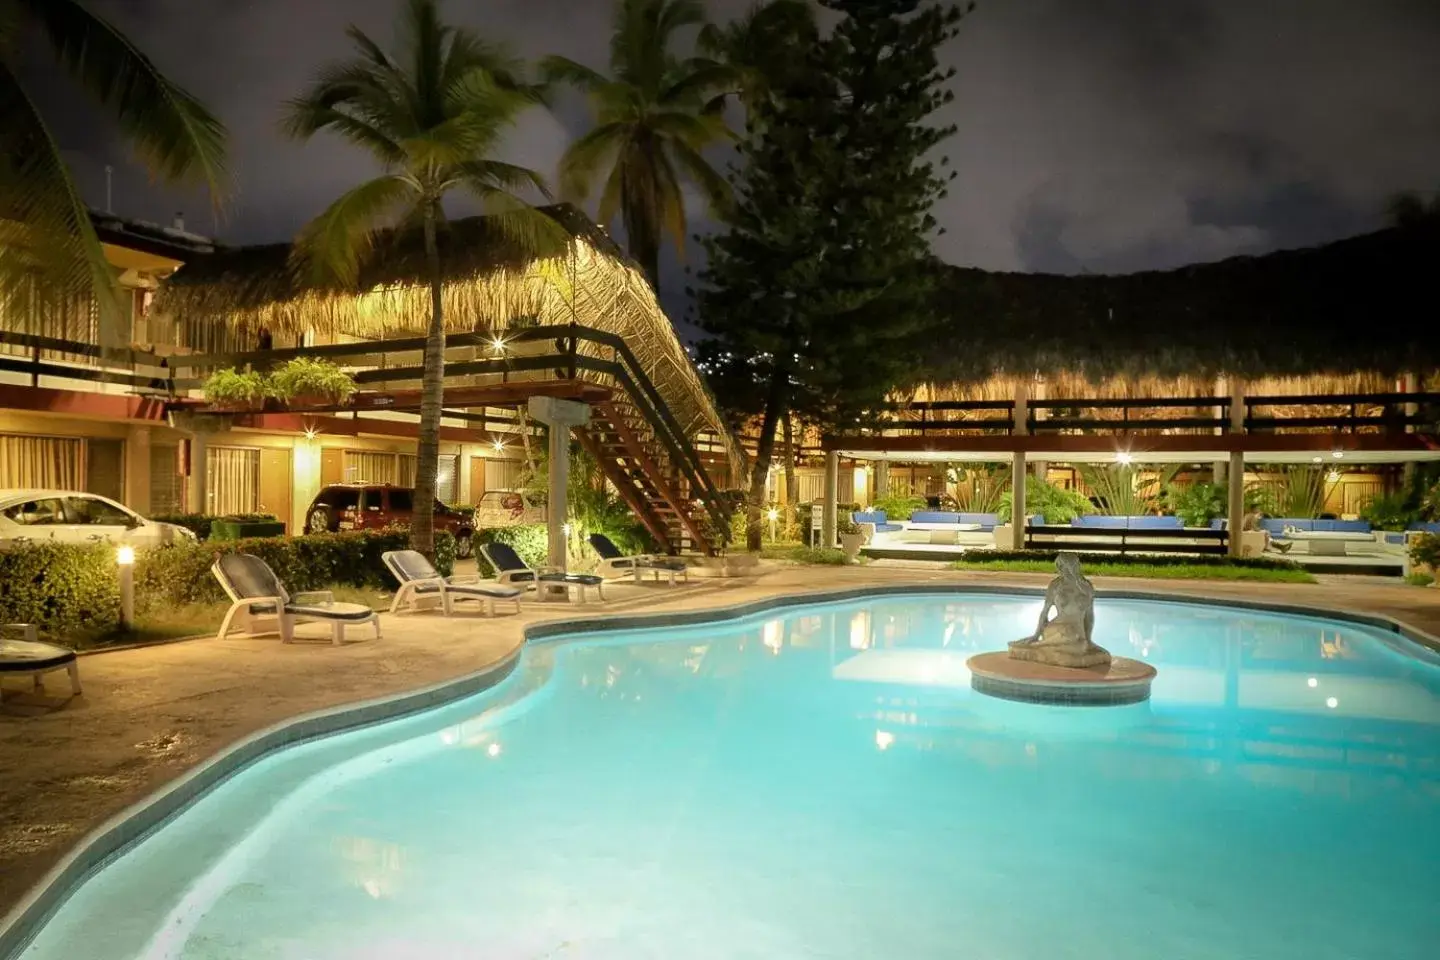 Night, Swimming Pool in Hotel Bali-Hai Acapulco